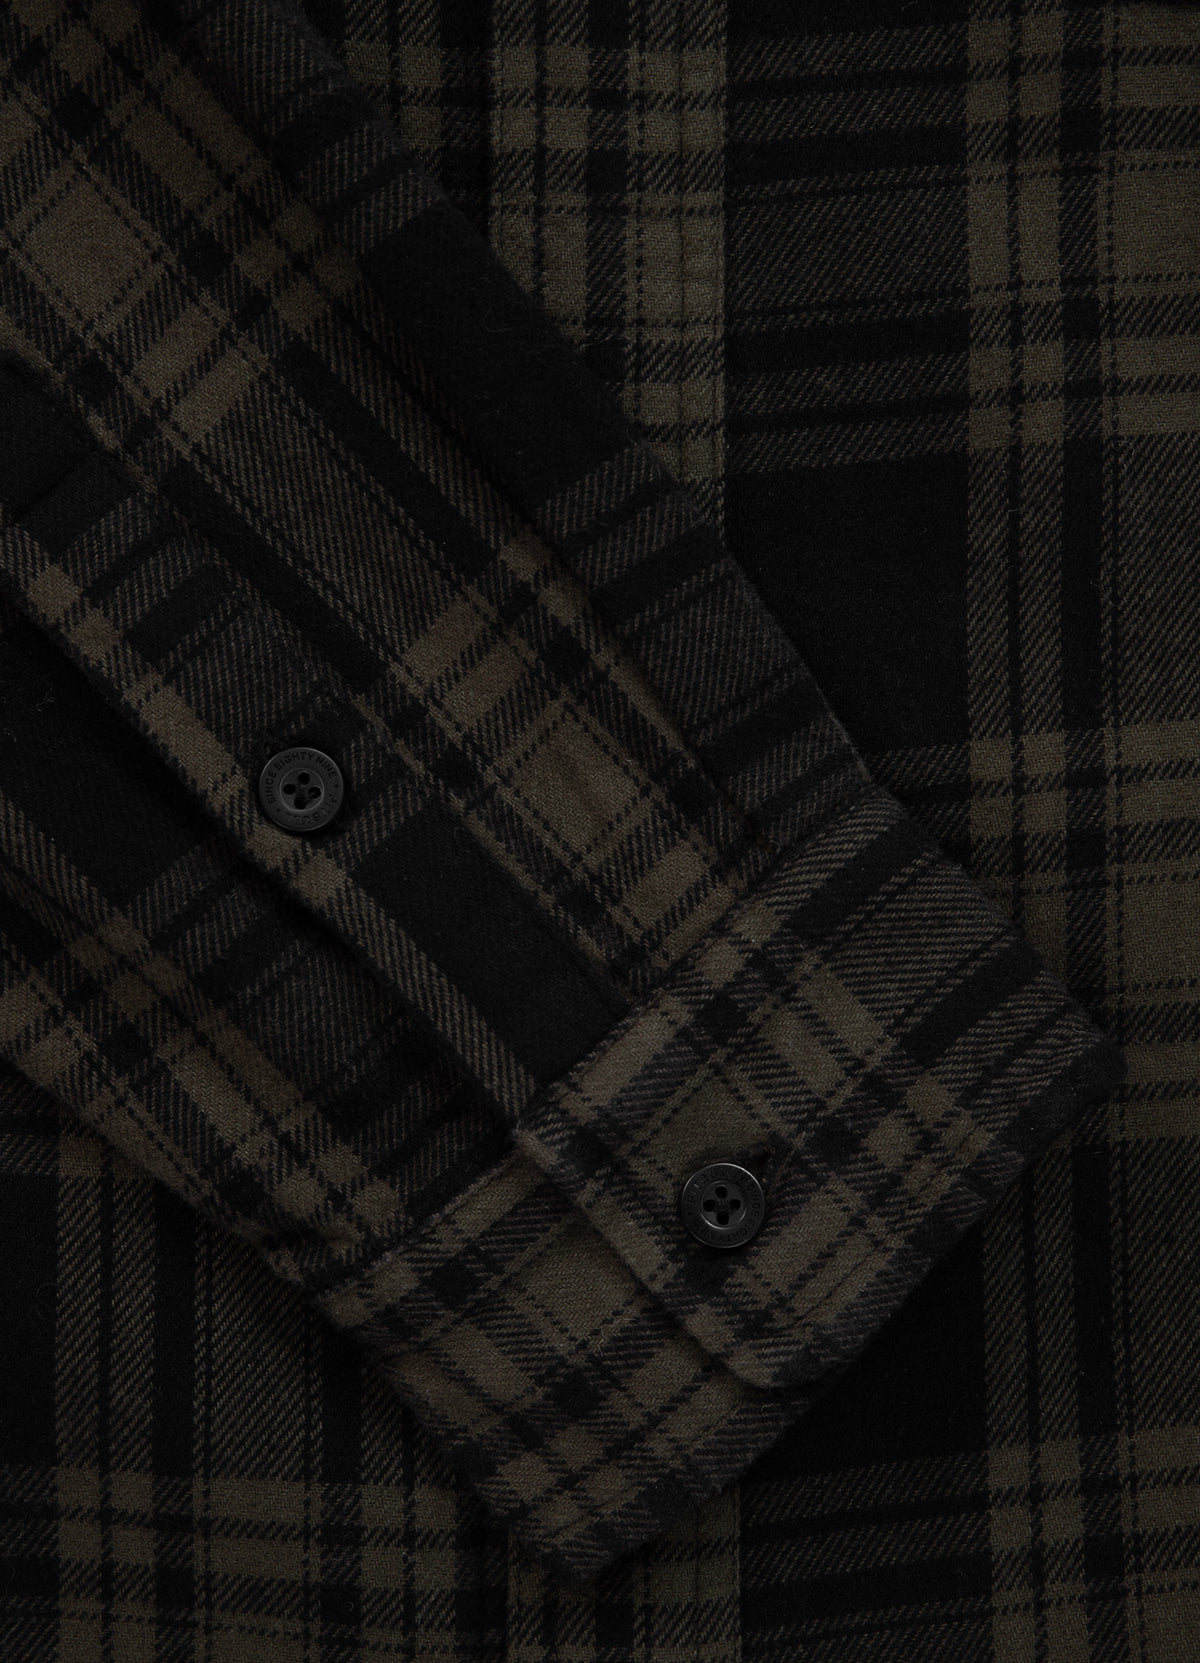 WOODSON Olive/Black Hooded Flannel Shirt